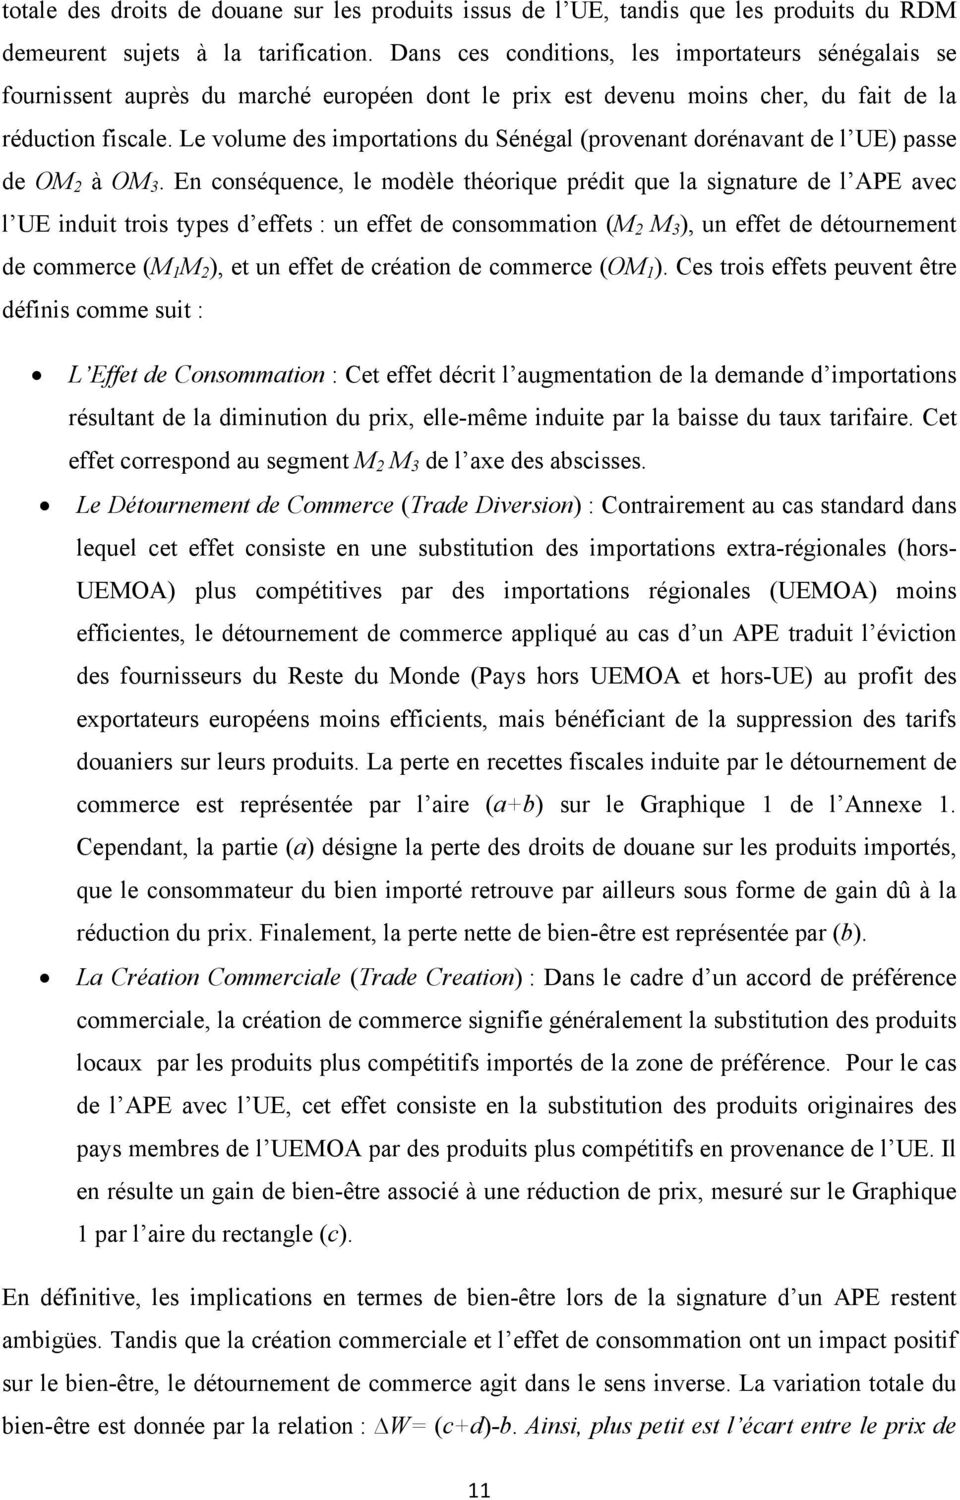 Le volume des imporaions du Sénégal (provenan dorénavan de l UE) passe de OM 2 à OM 3.